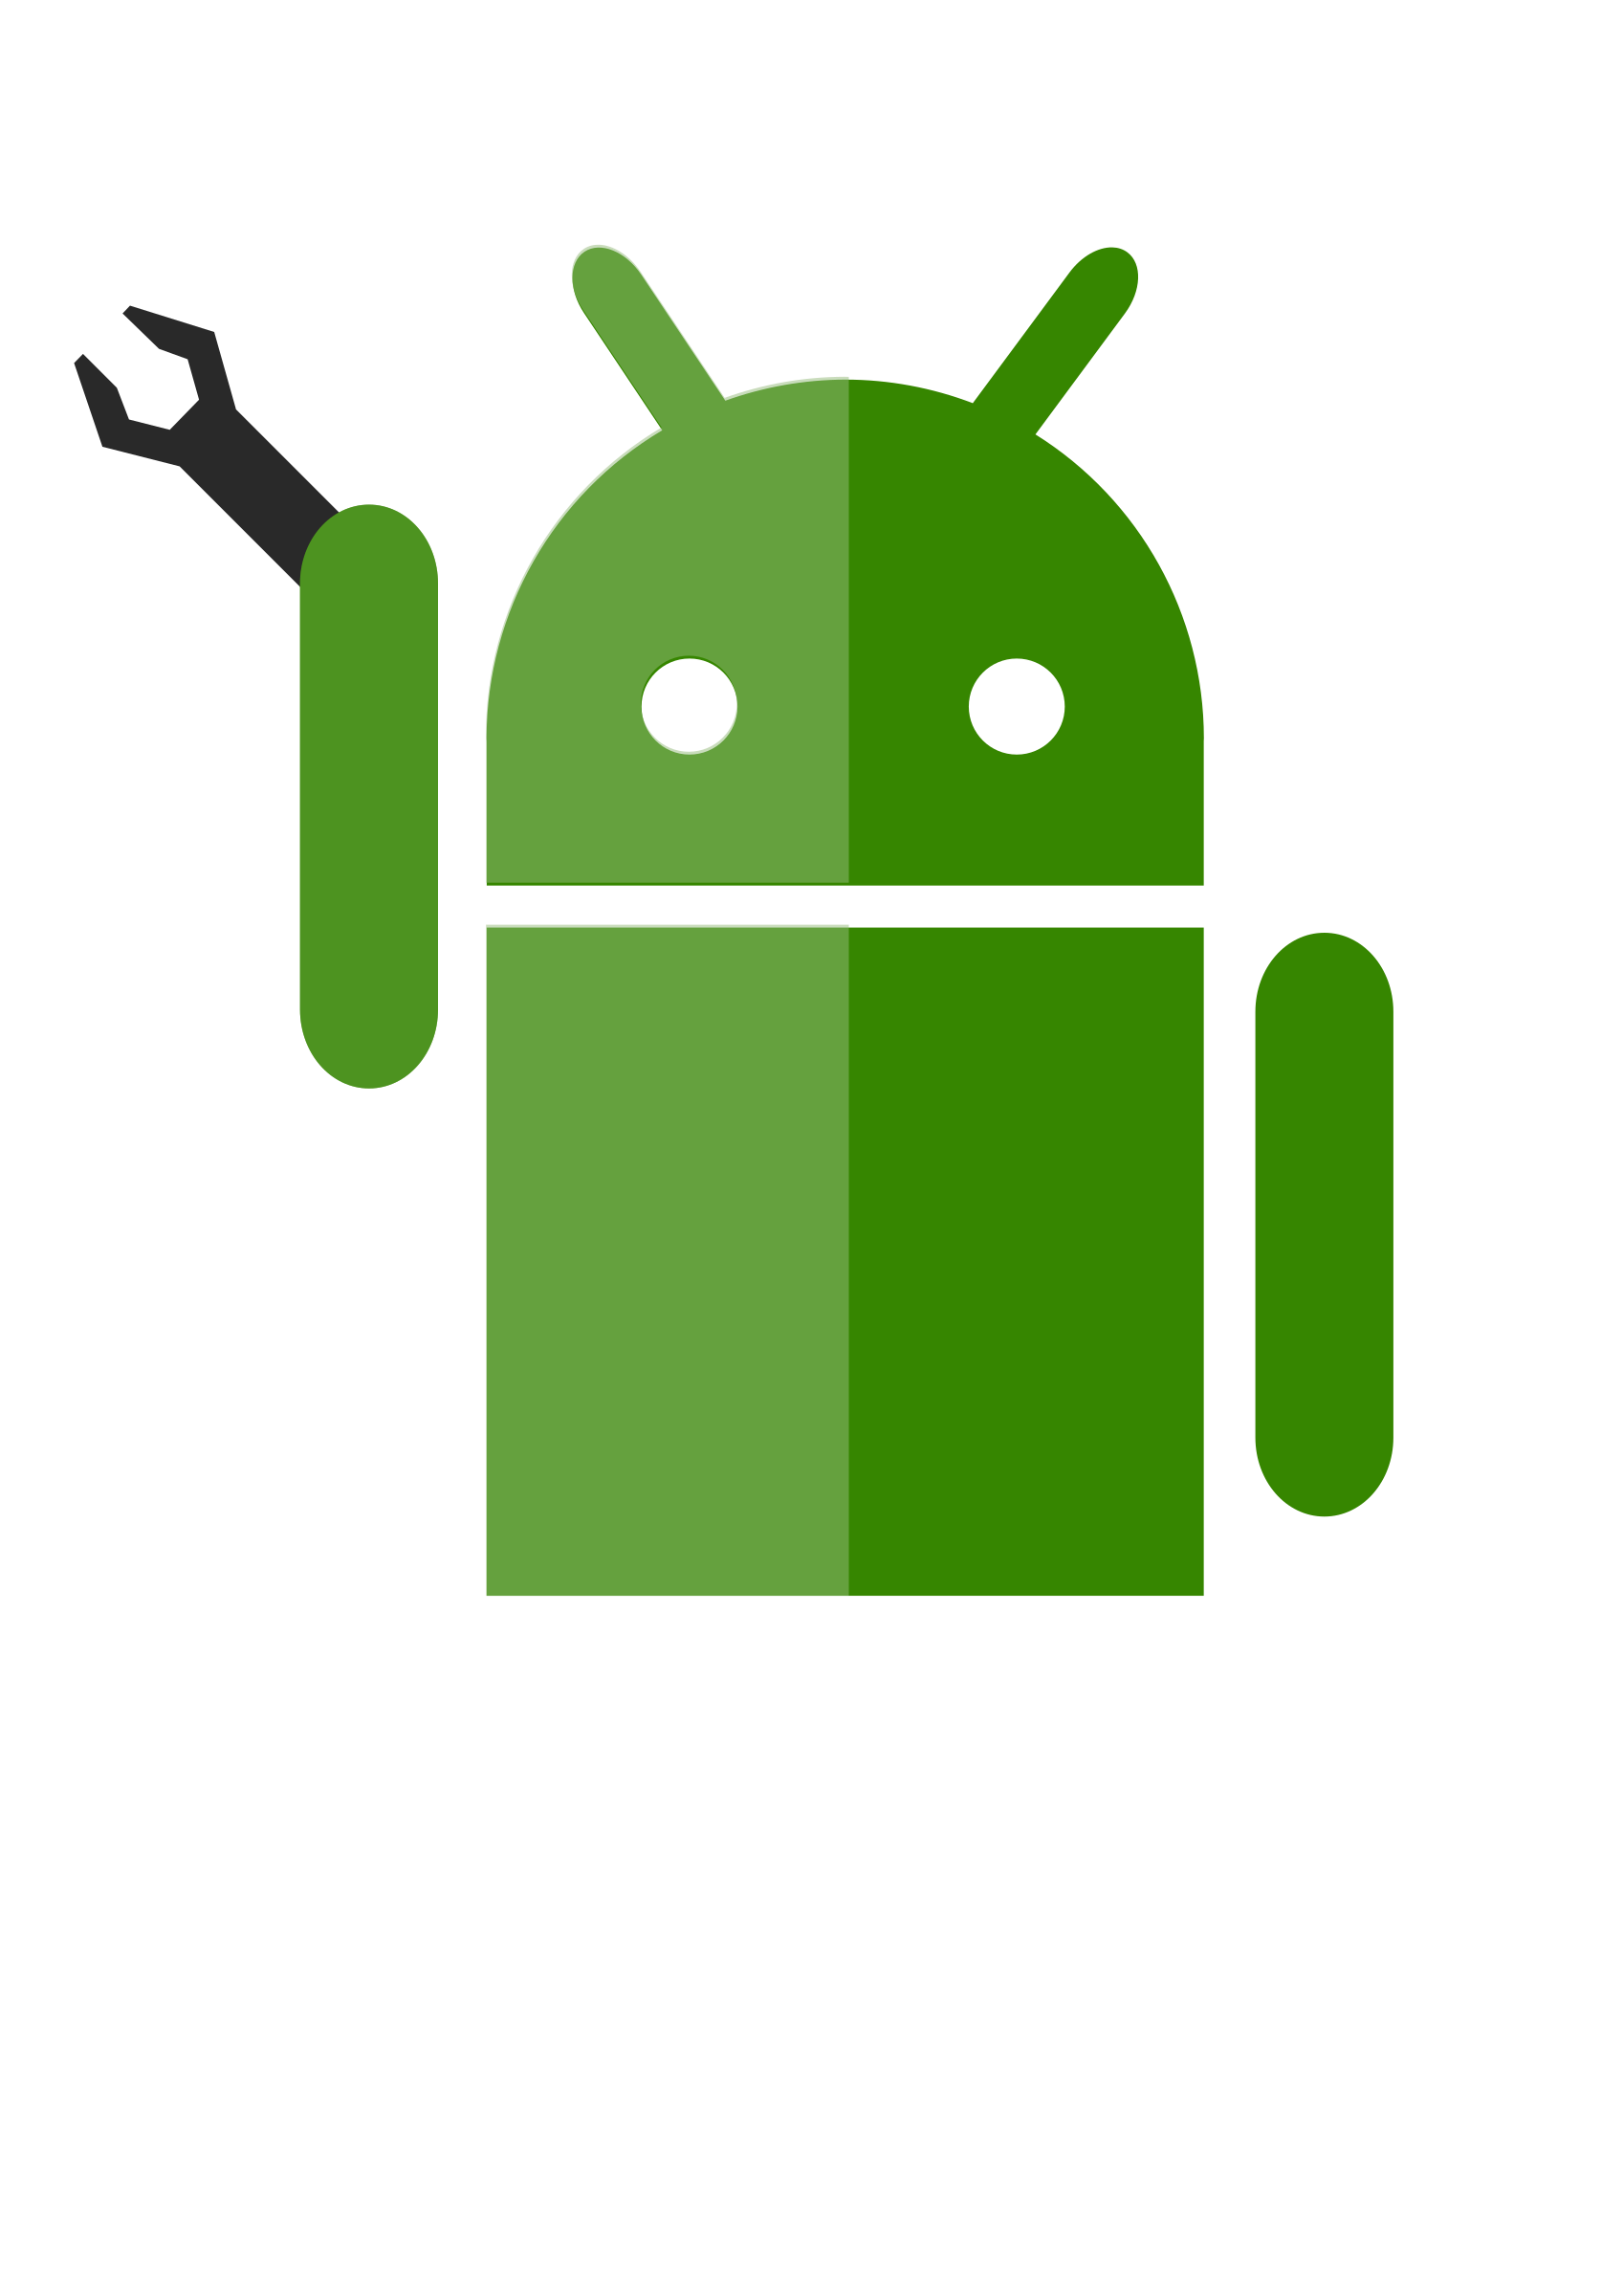 Андроид. Логотип андроид. Андро. Значок андроид вектор. Зеленый значок андроида